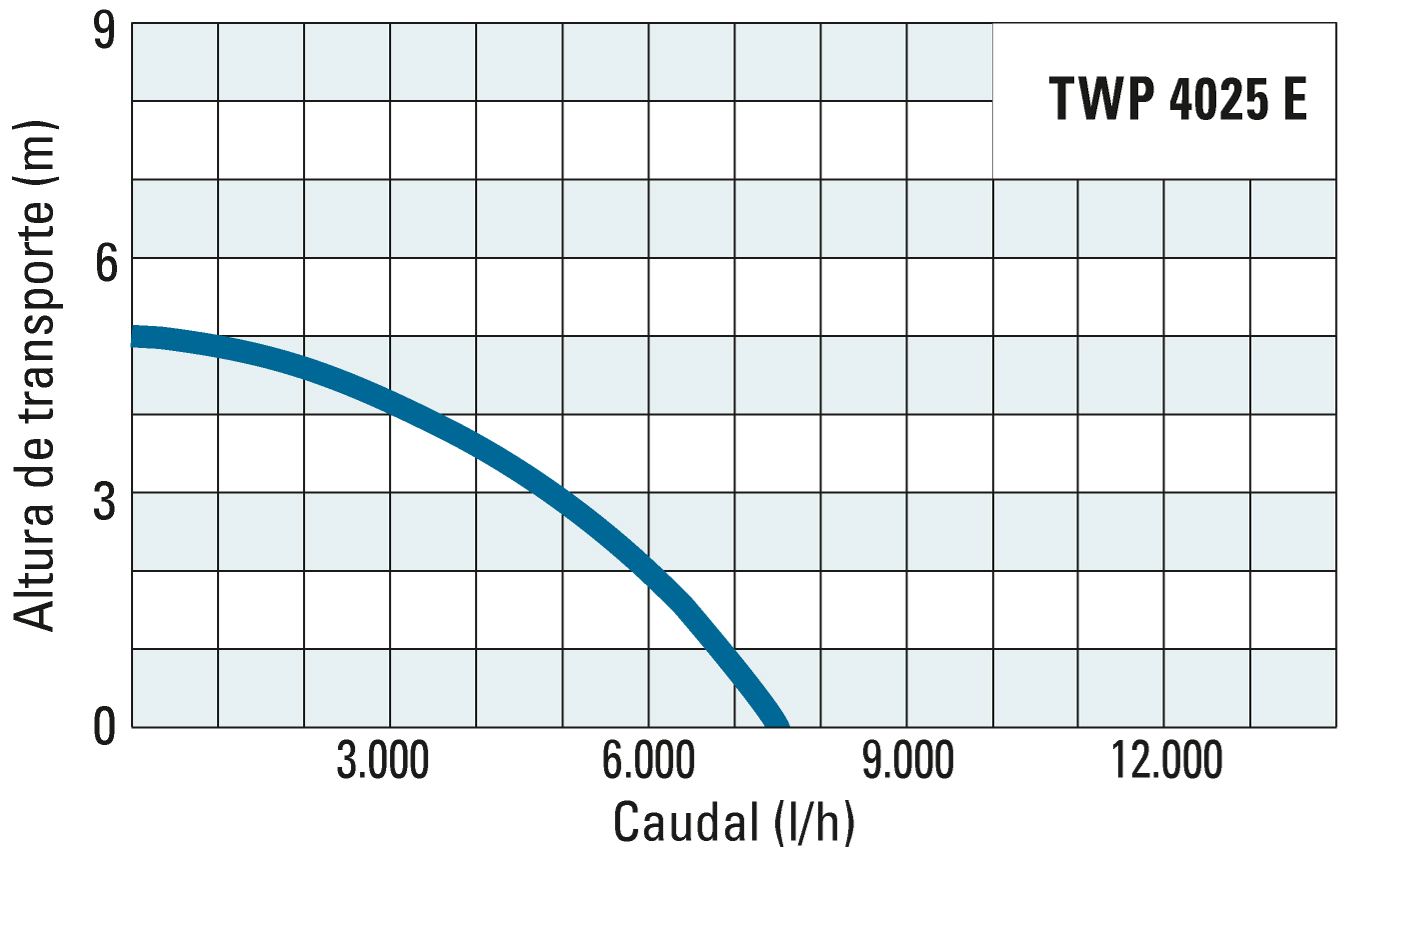 Altura de transporte e débito da TWP 4025 E